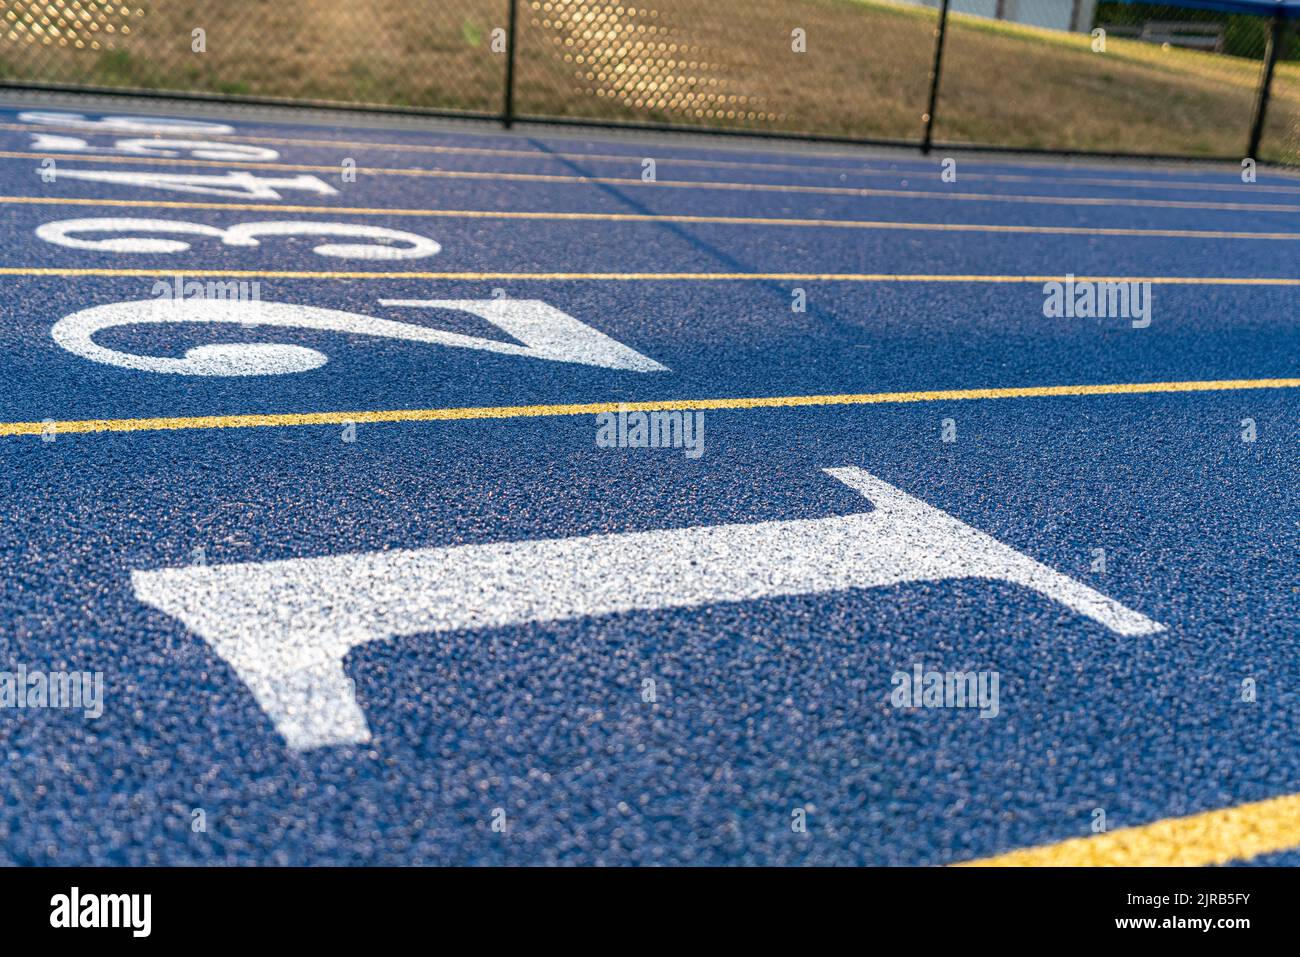 Inspirierende Nahaufnahme einer neuen blauen Laufstrecke mit gelben Spurlinien und anderen Markierungen. Stockfoto